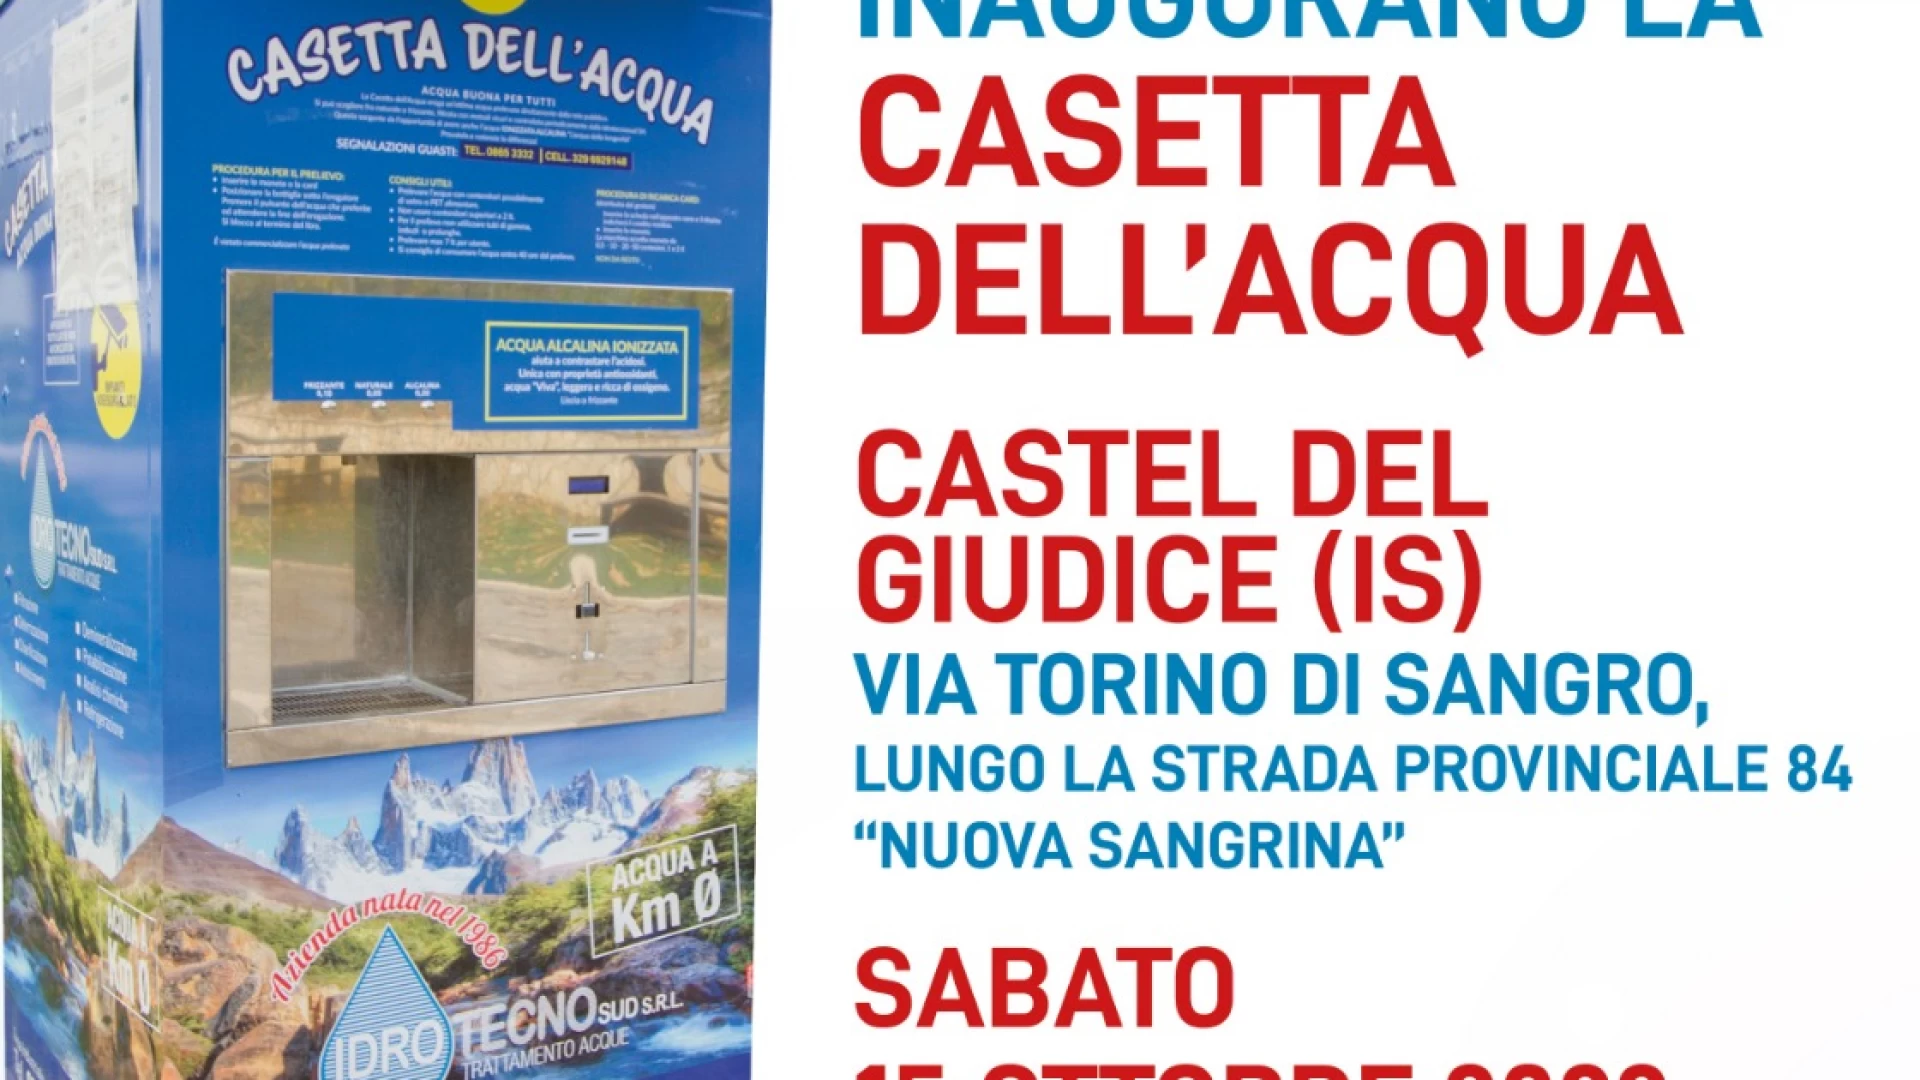 Castel Del Giudice: sabato 15 ottobre l’inaugurazione della Casetta dell’Acqua installata dalla Idro Tecno Sud srl di Carpinone.